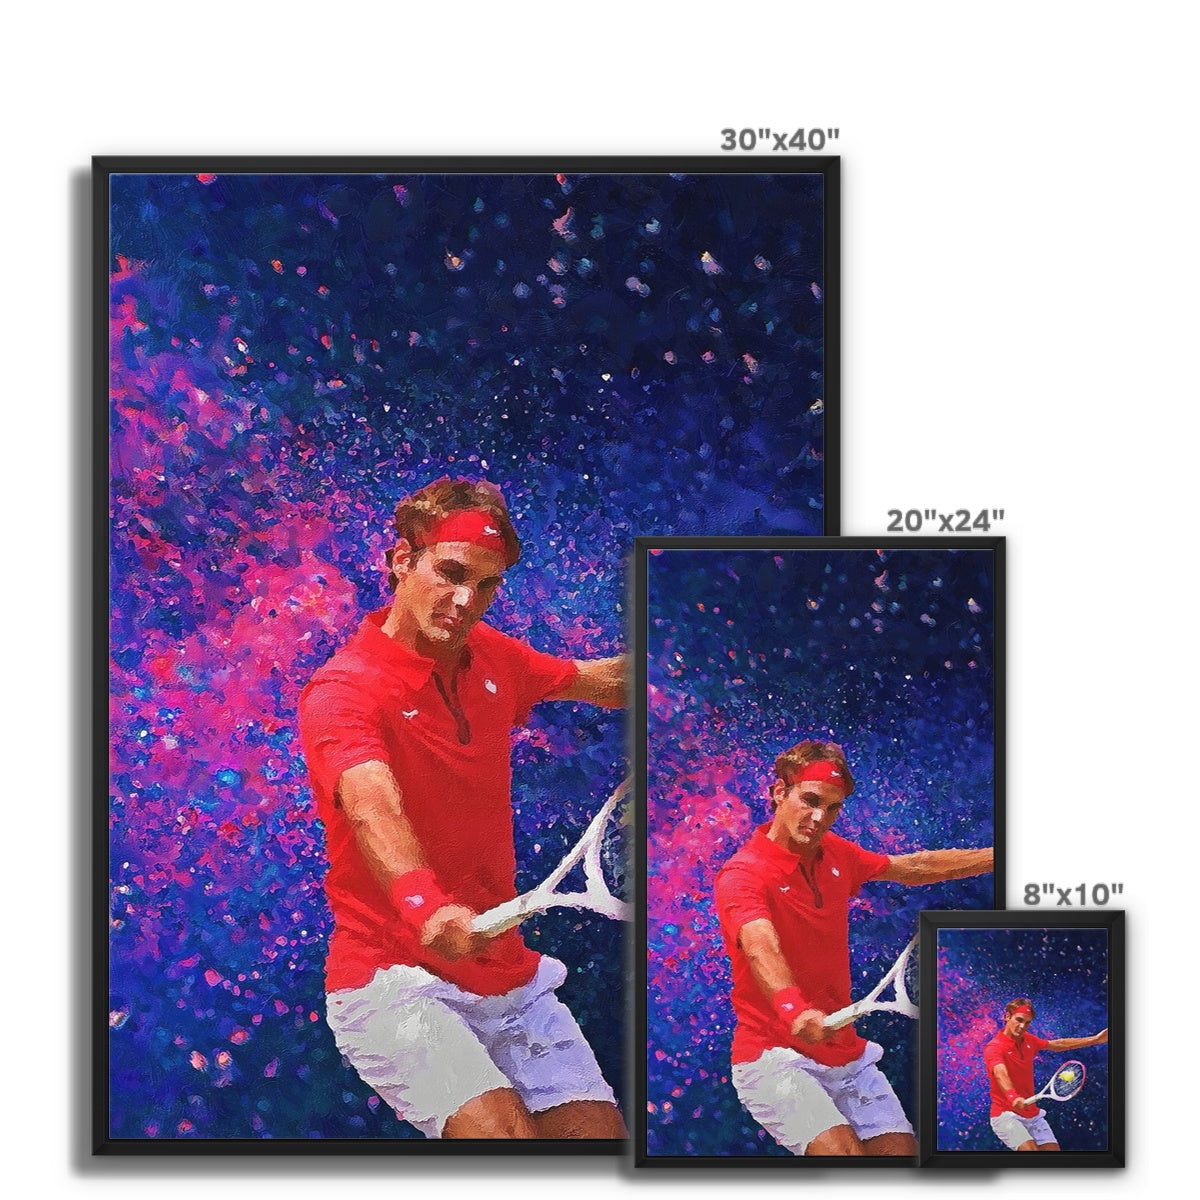 Roger Federer Oil Style Framed Canvas